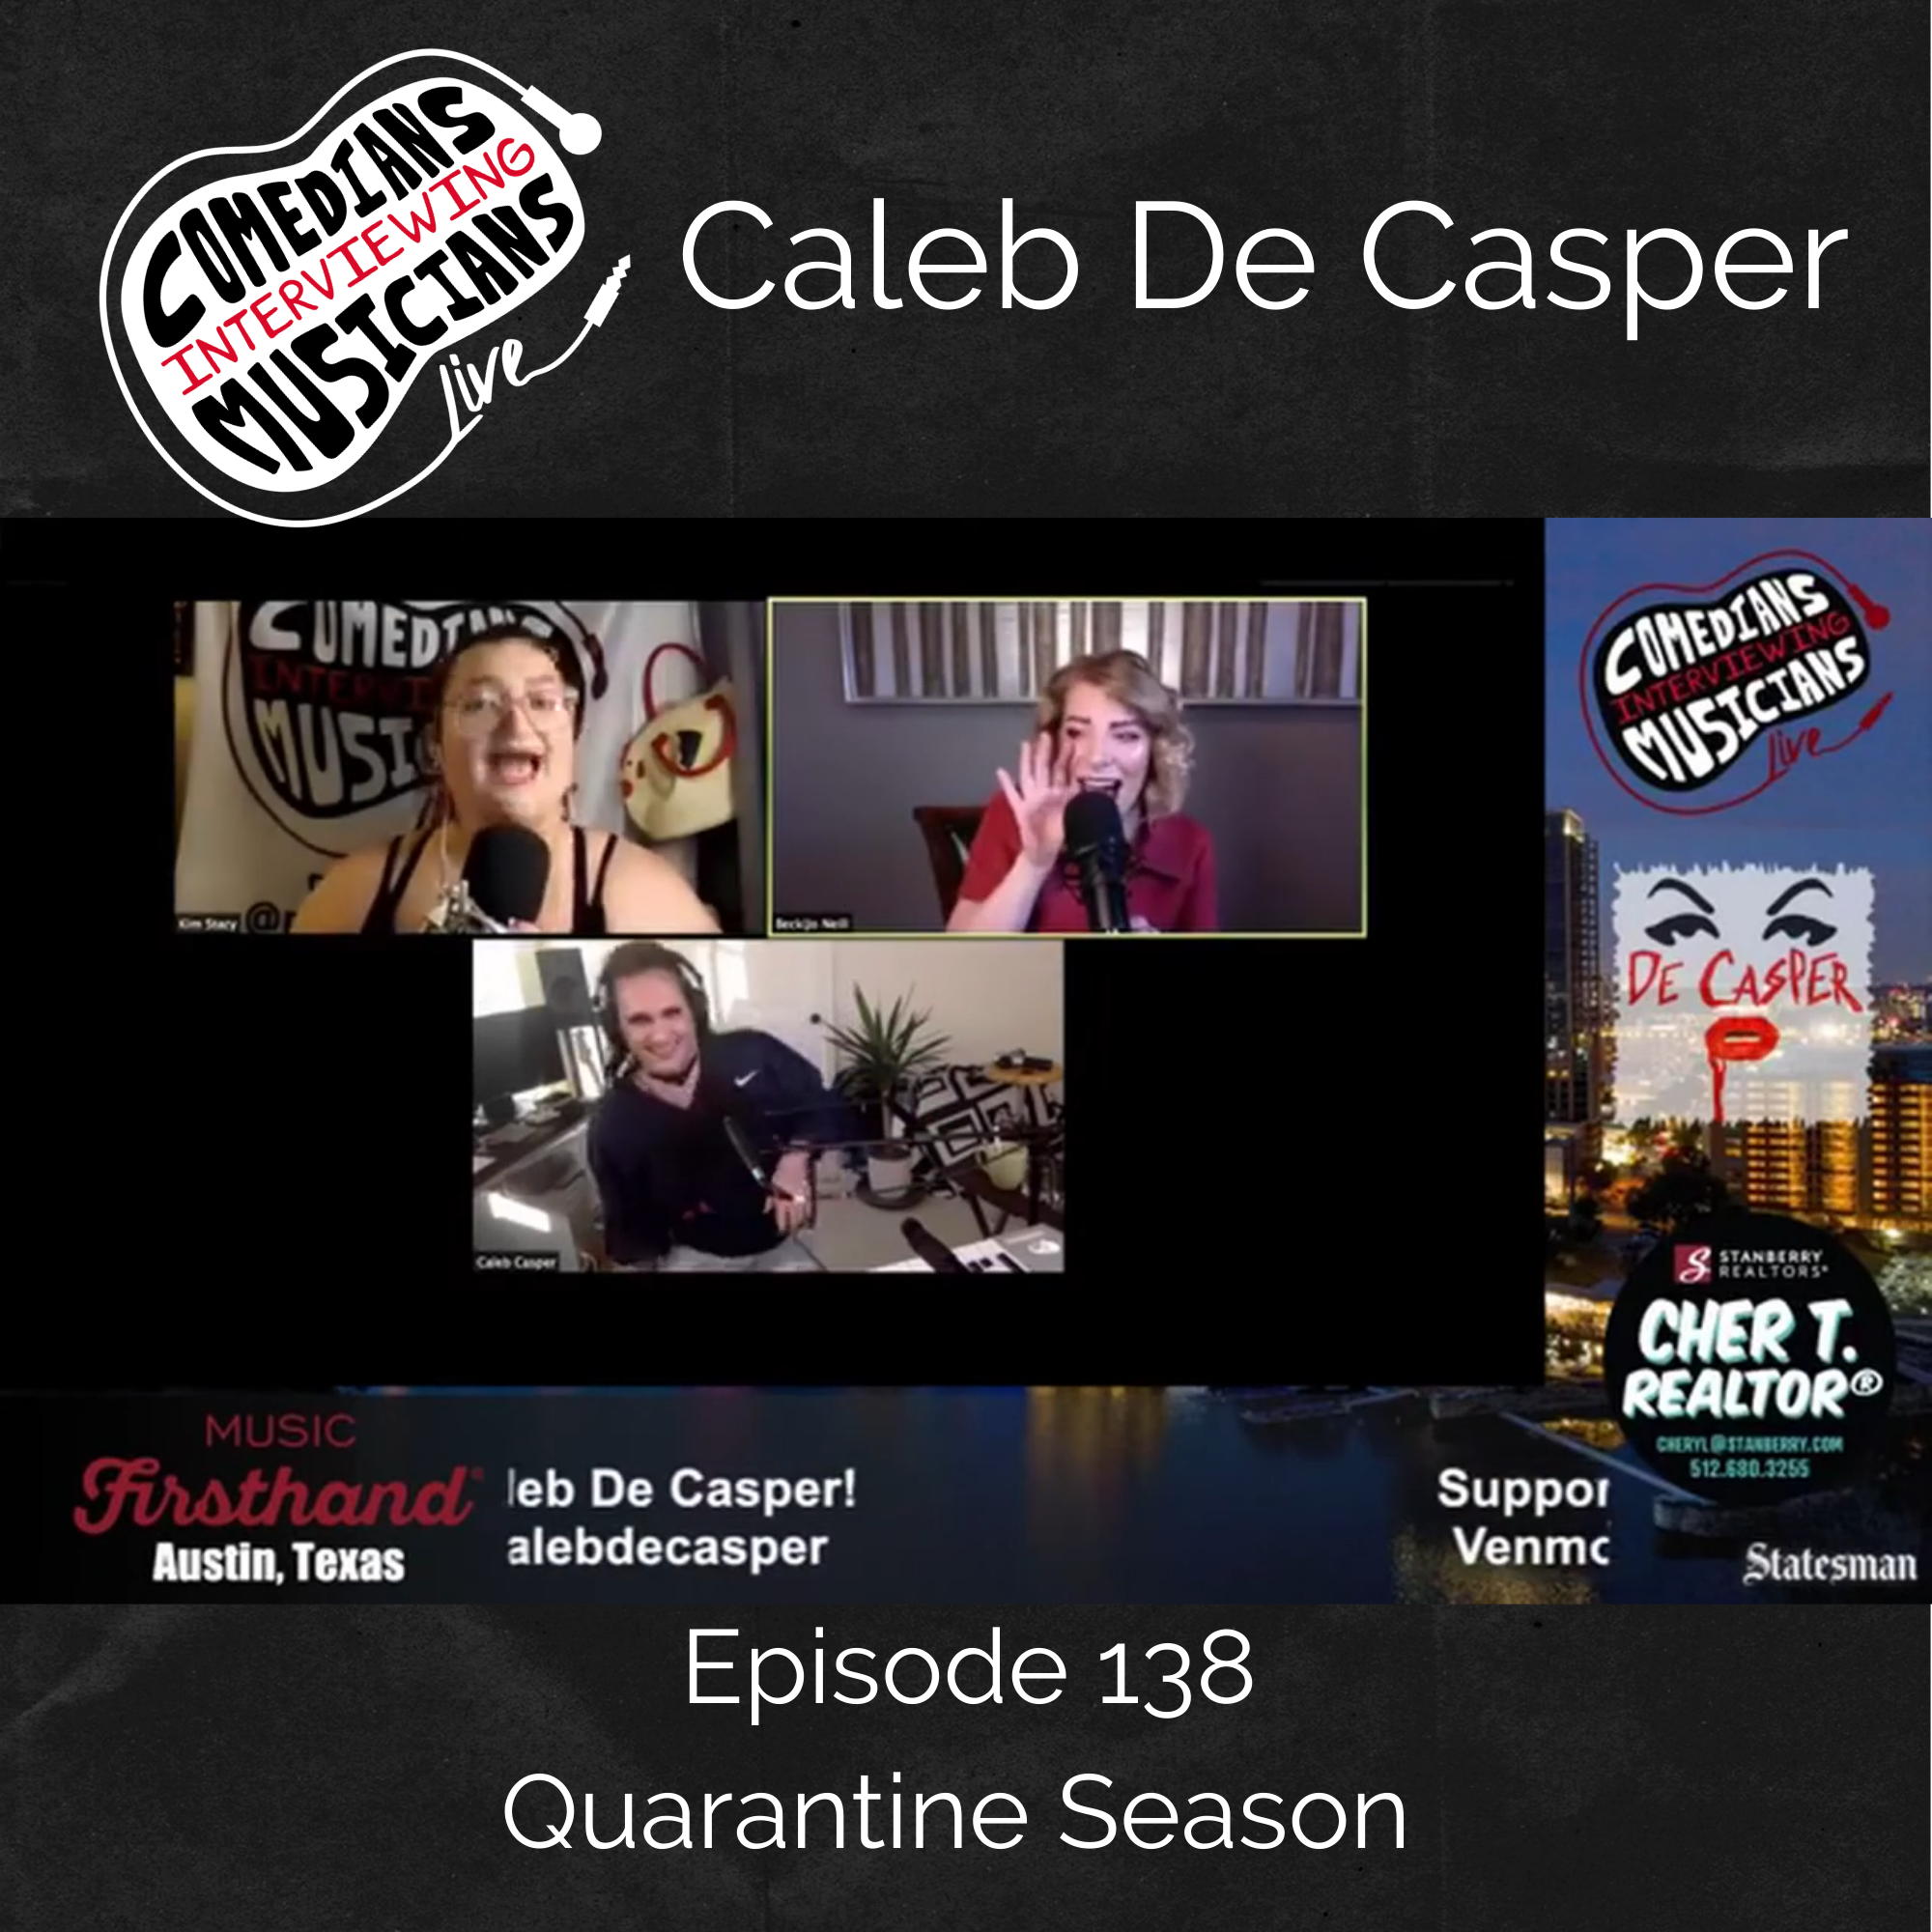 Caleb De Casper